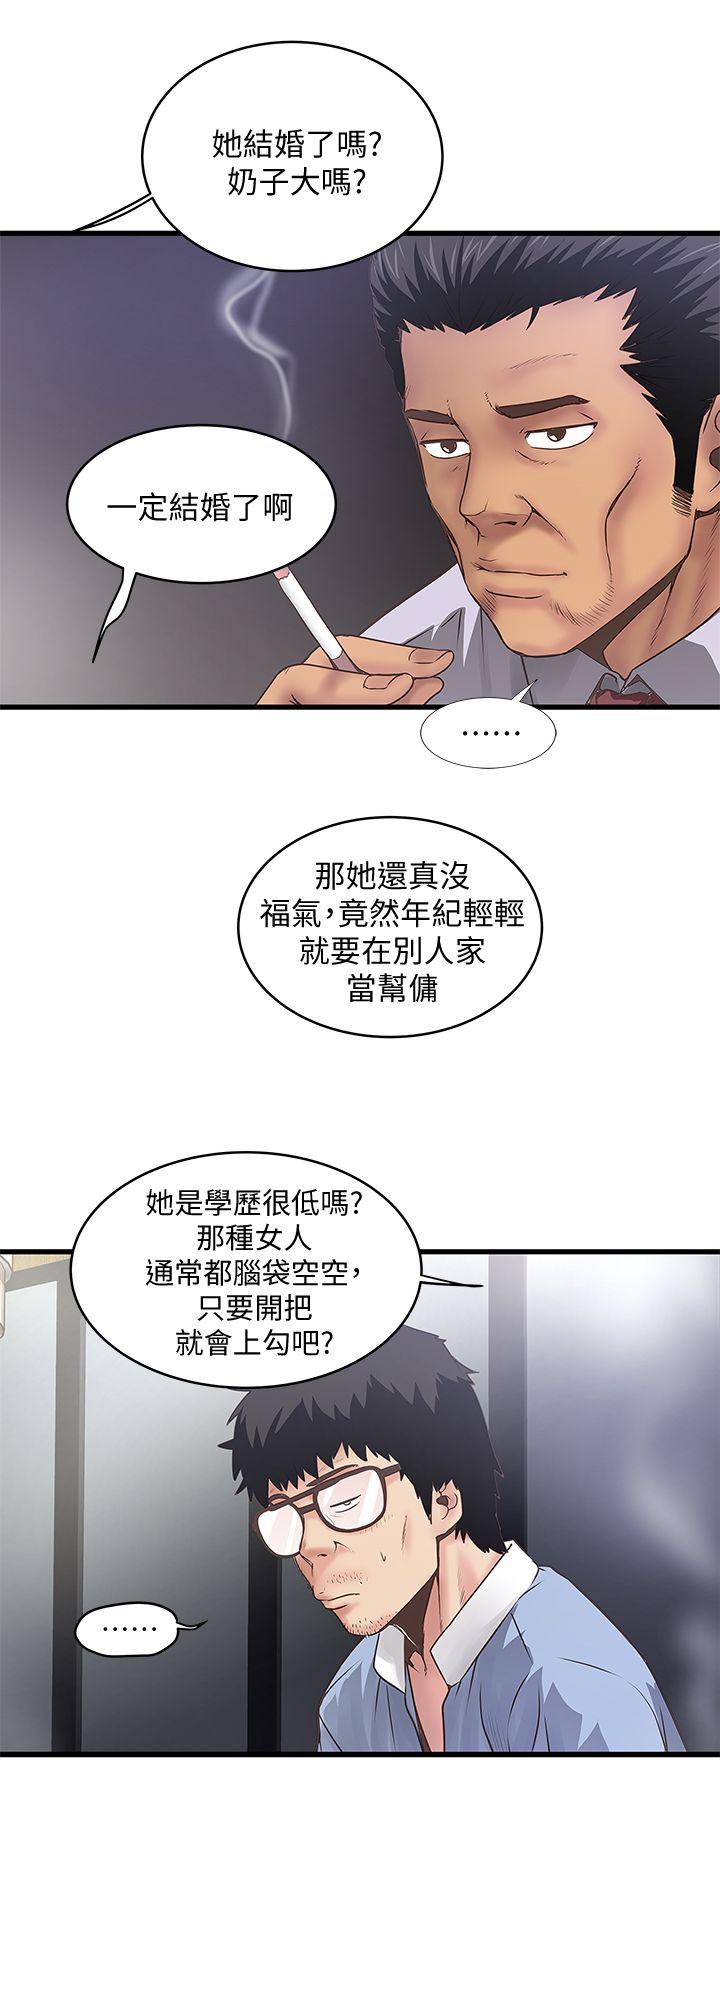 韩国污漫画 下女,初希 第8话-俊皓第一次花天酒地 7